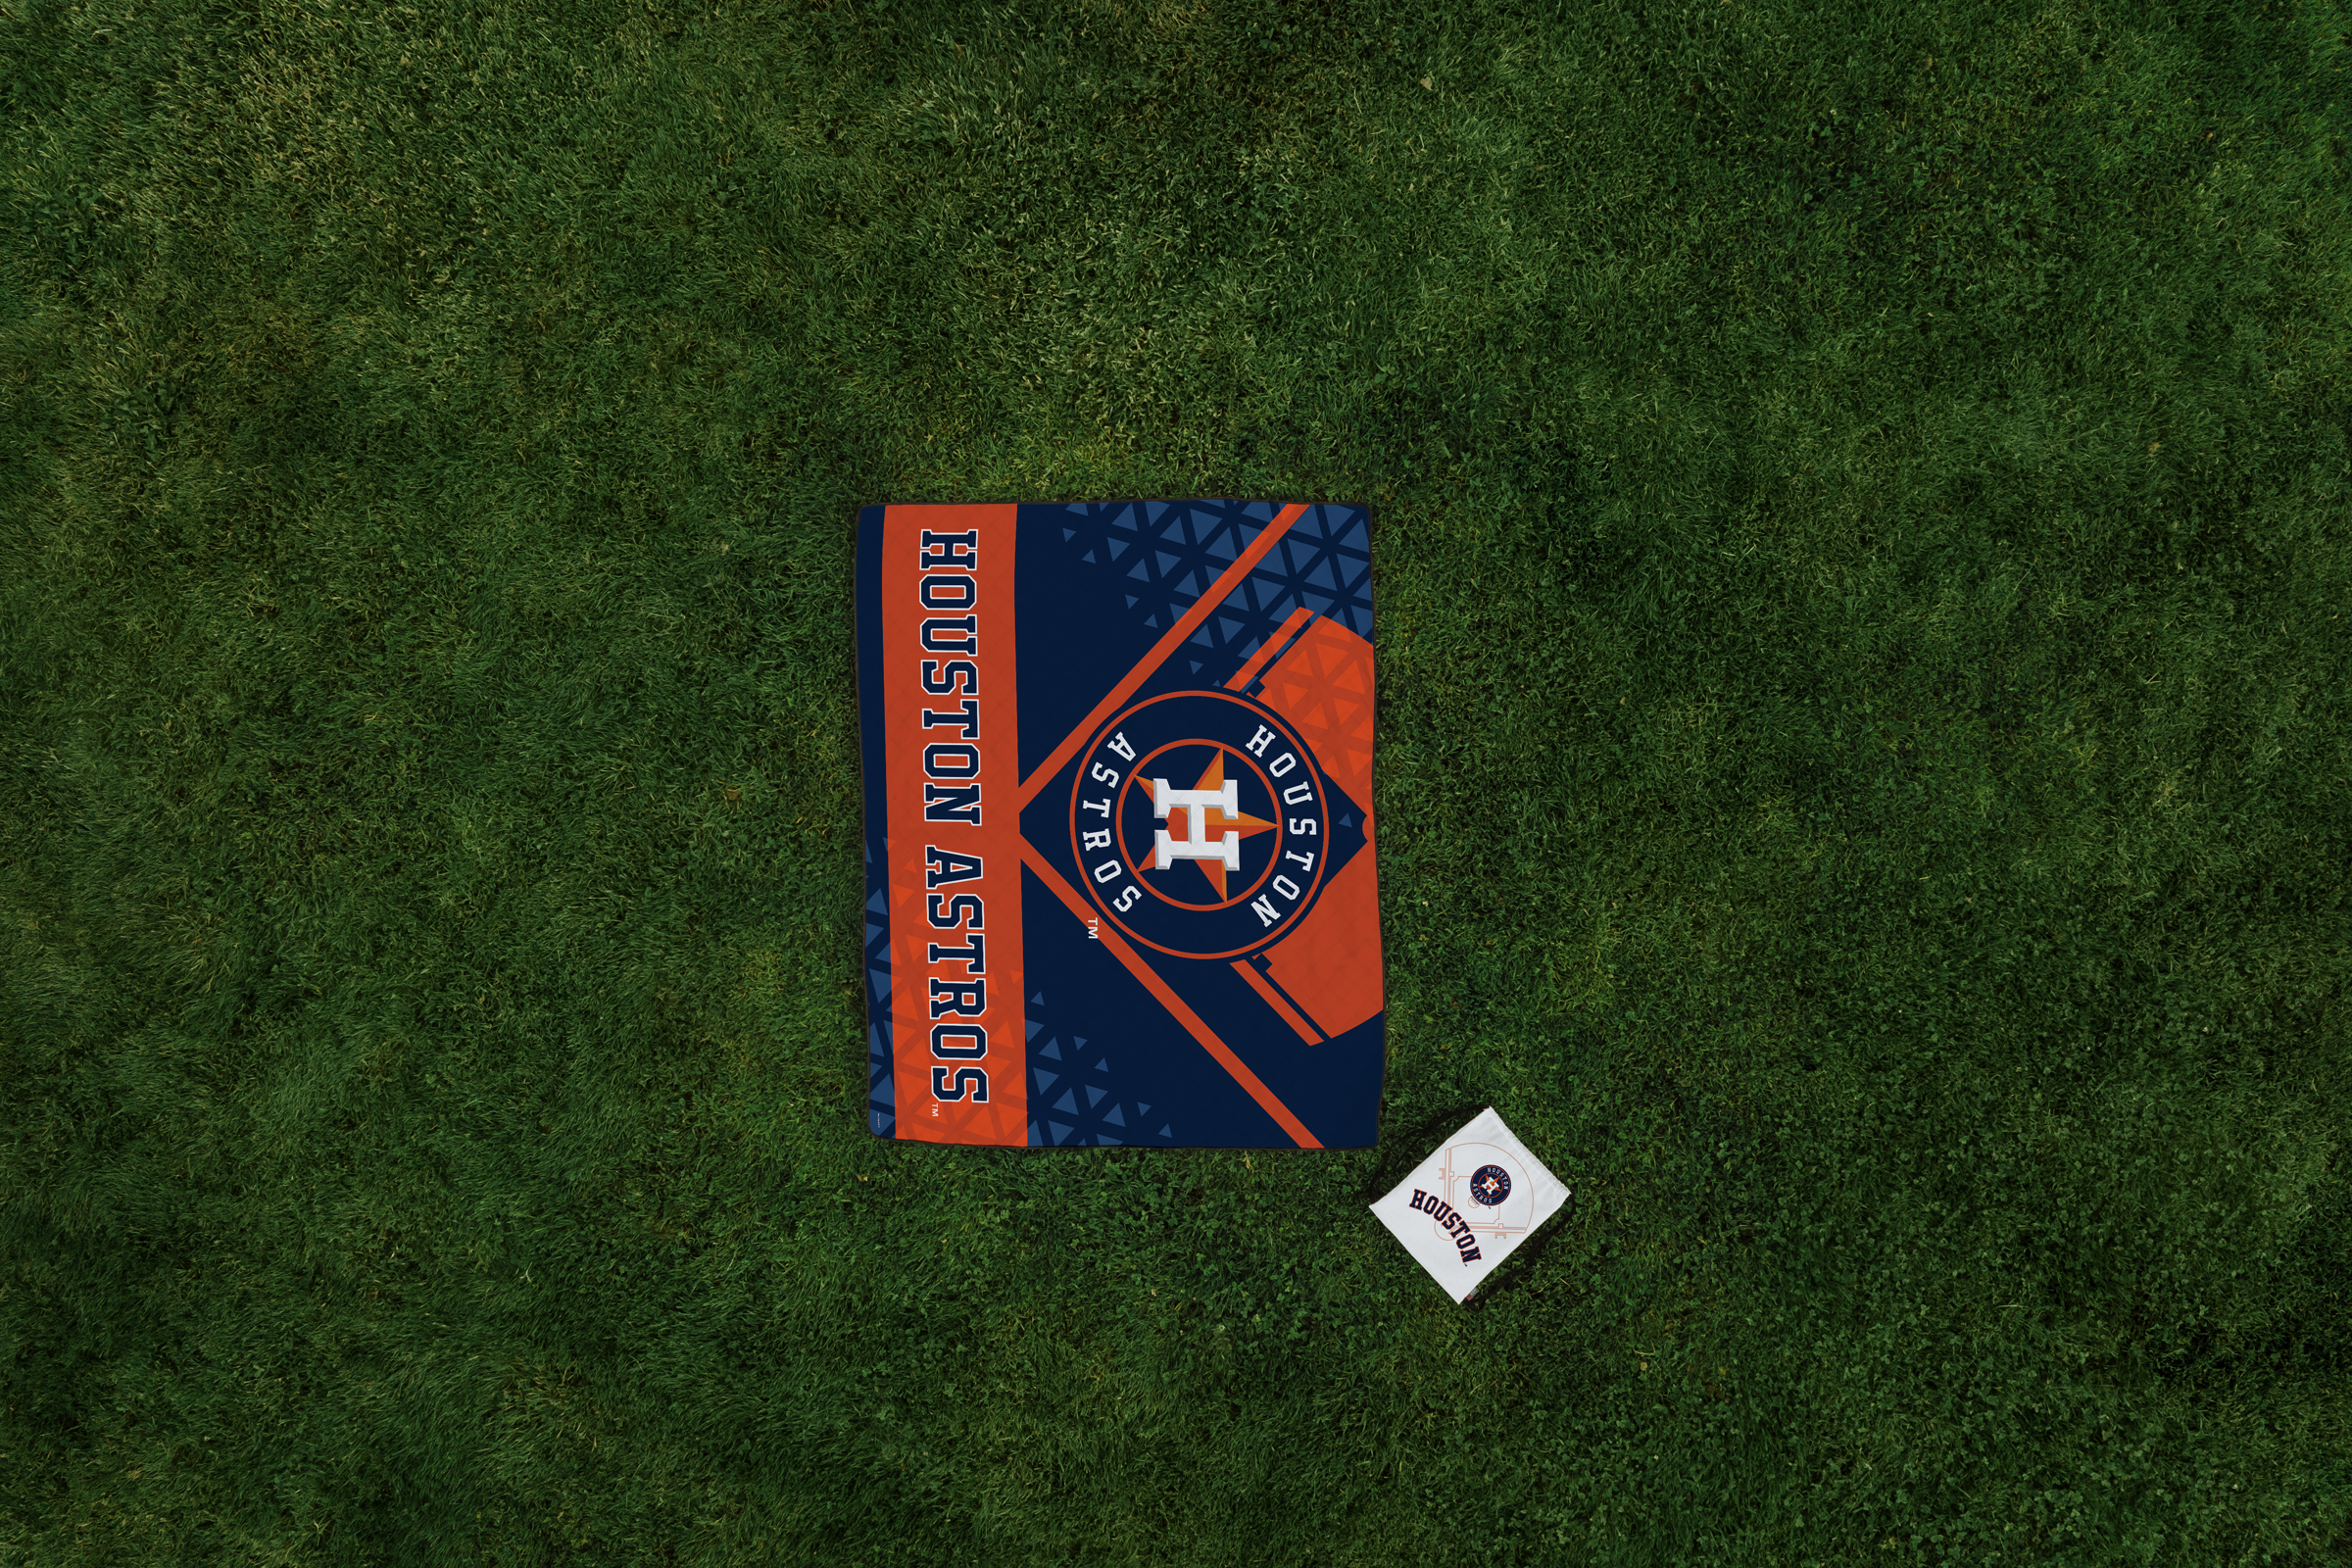 Houston Astros - Impresa Picnic Blanket